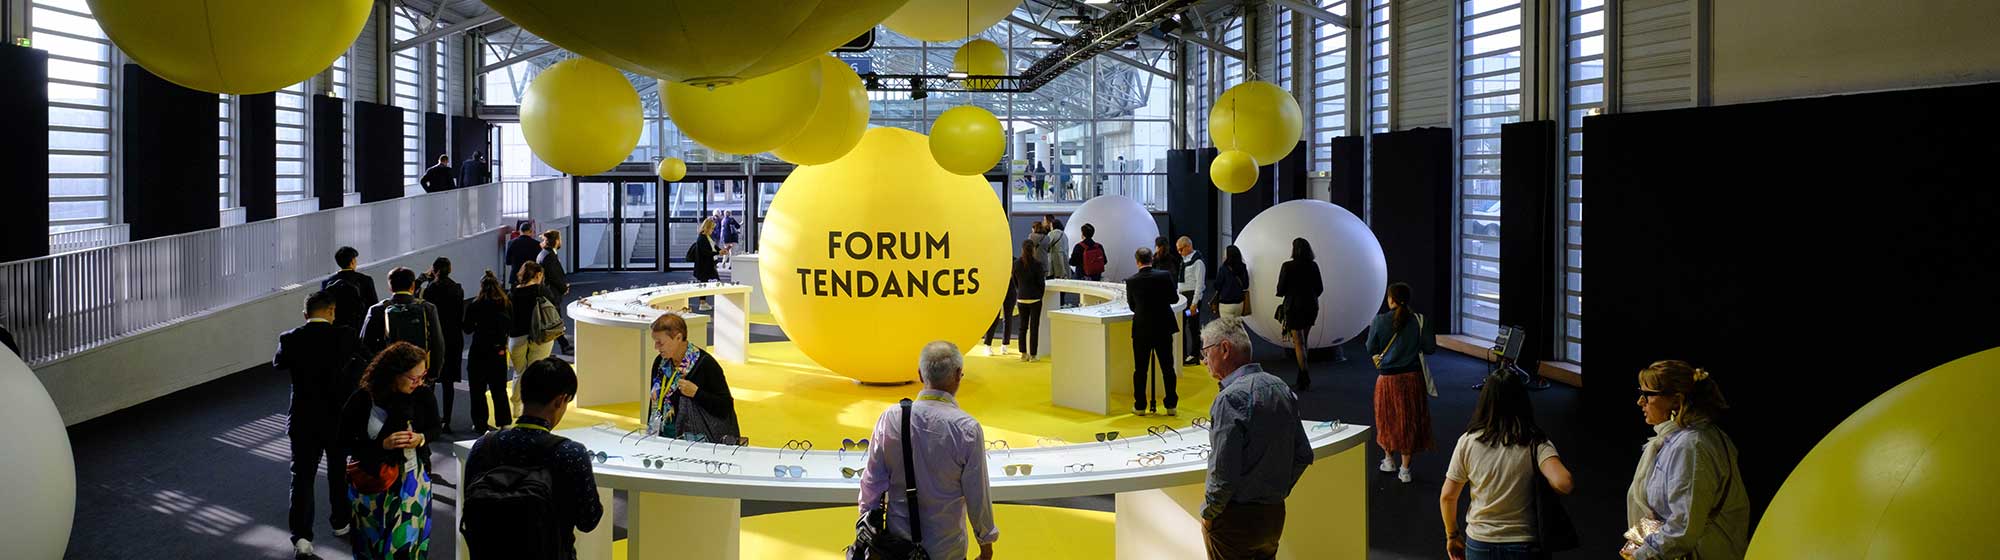 Ballons jaunes exposés au Forum des tendances